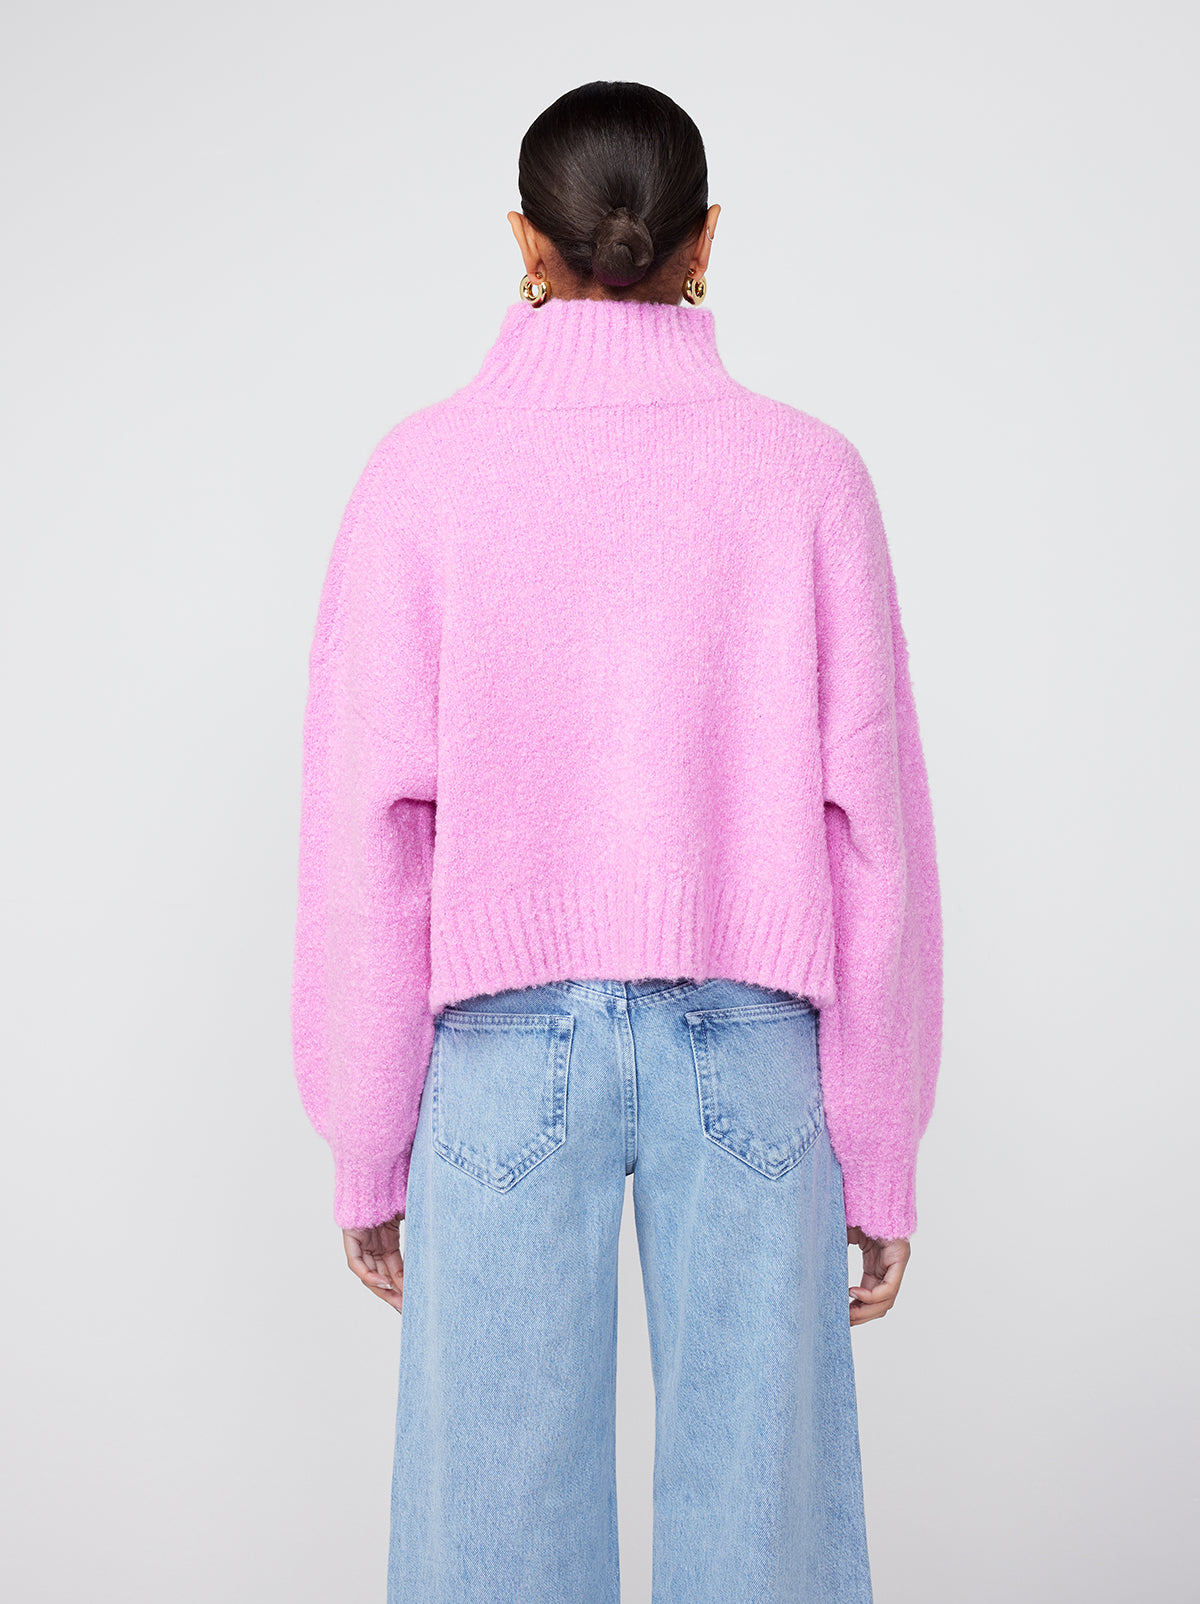 Yara Pink Animal Boulce Knit Sweater | KITRI Studio